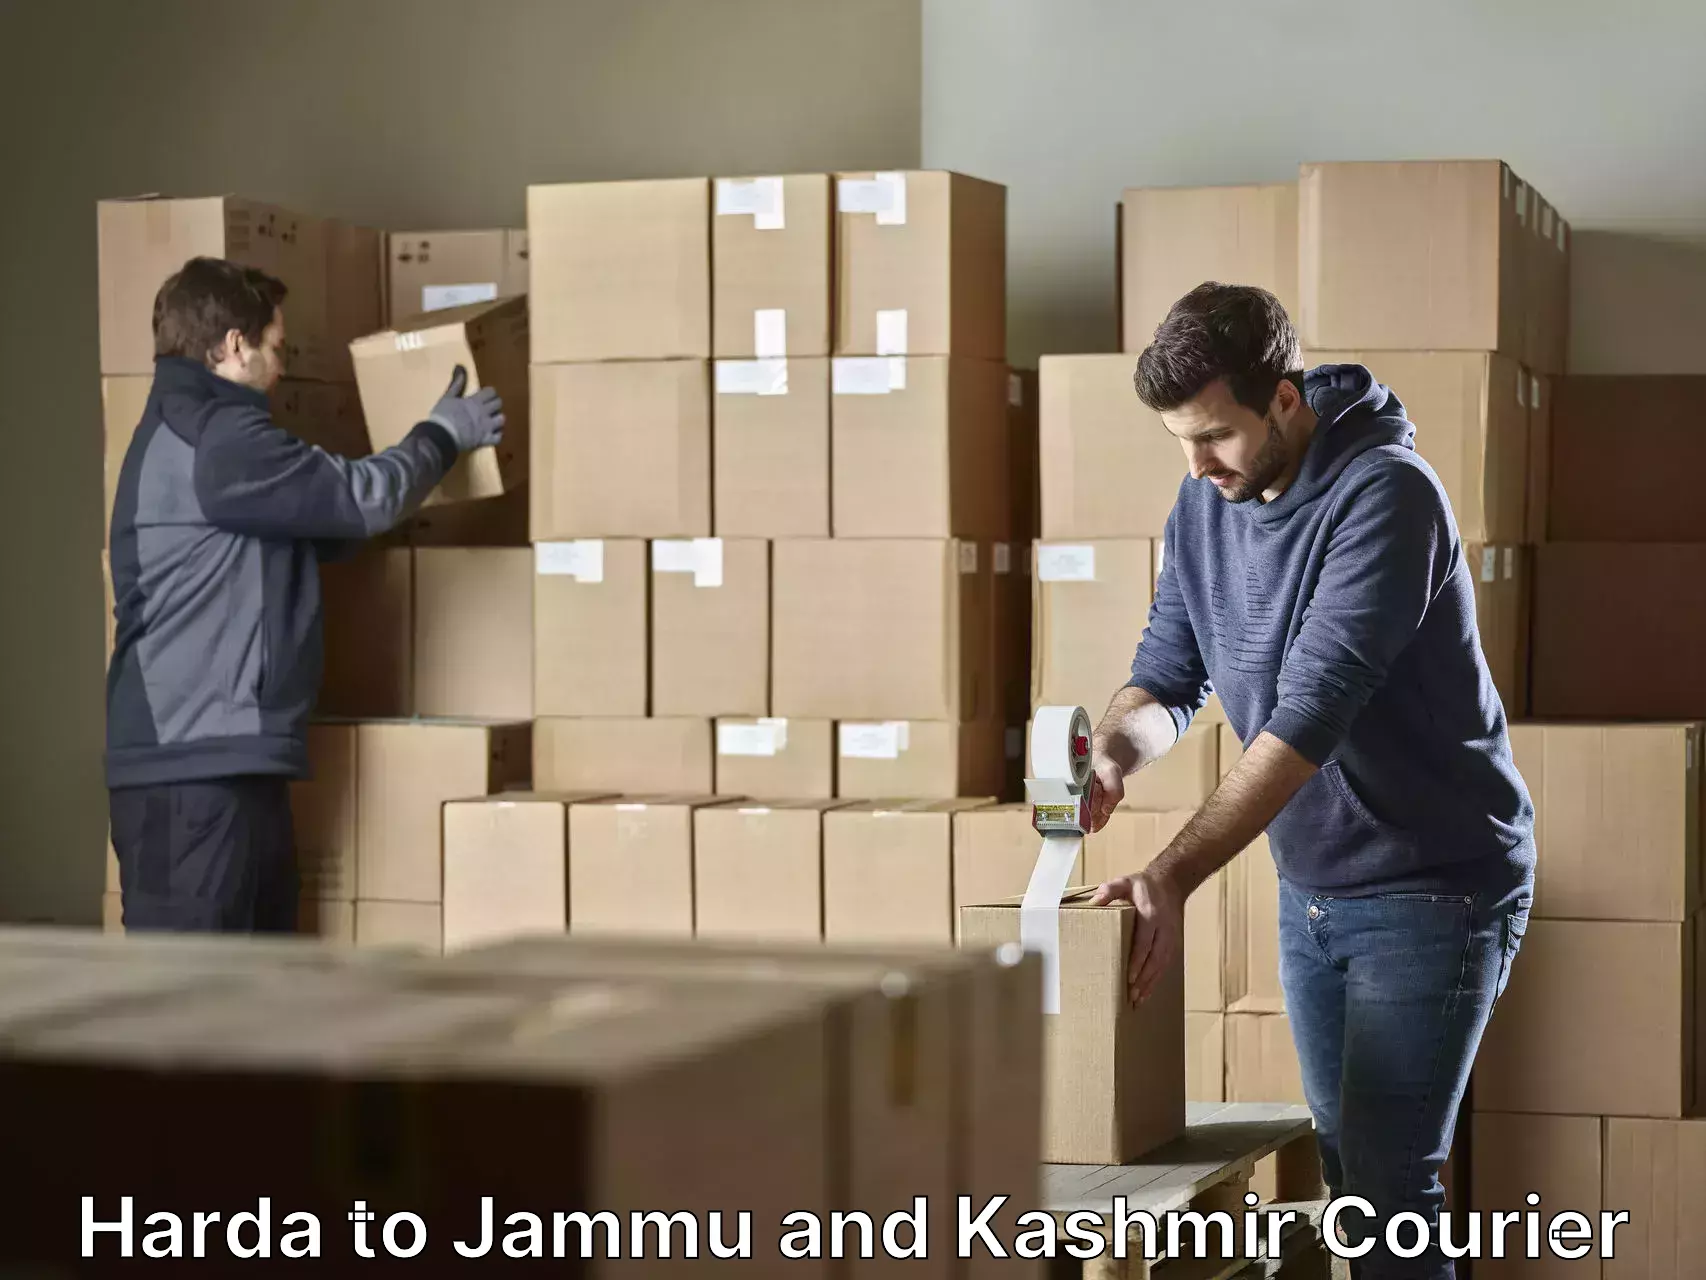 Furniture delivery service Harda to Kargil